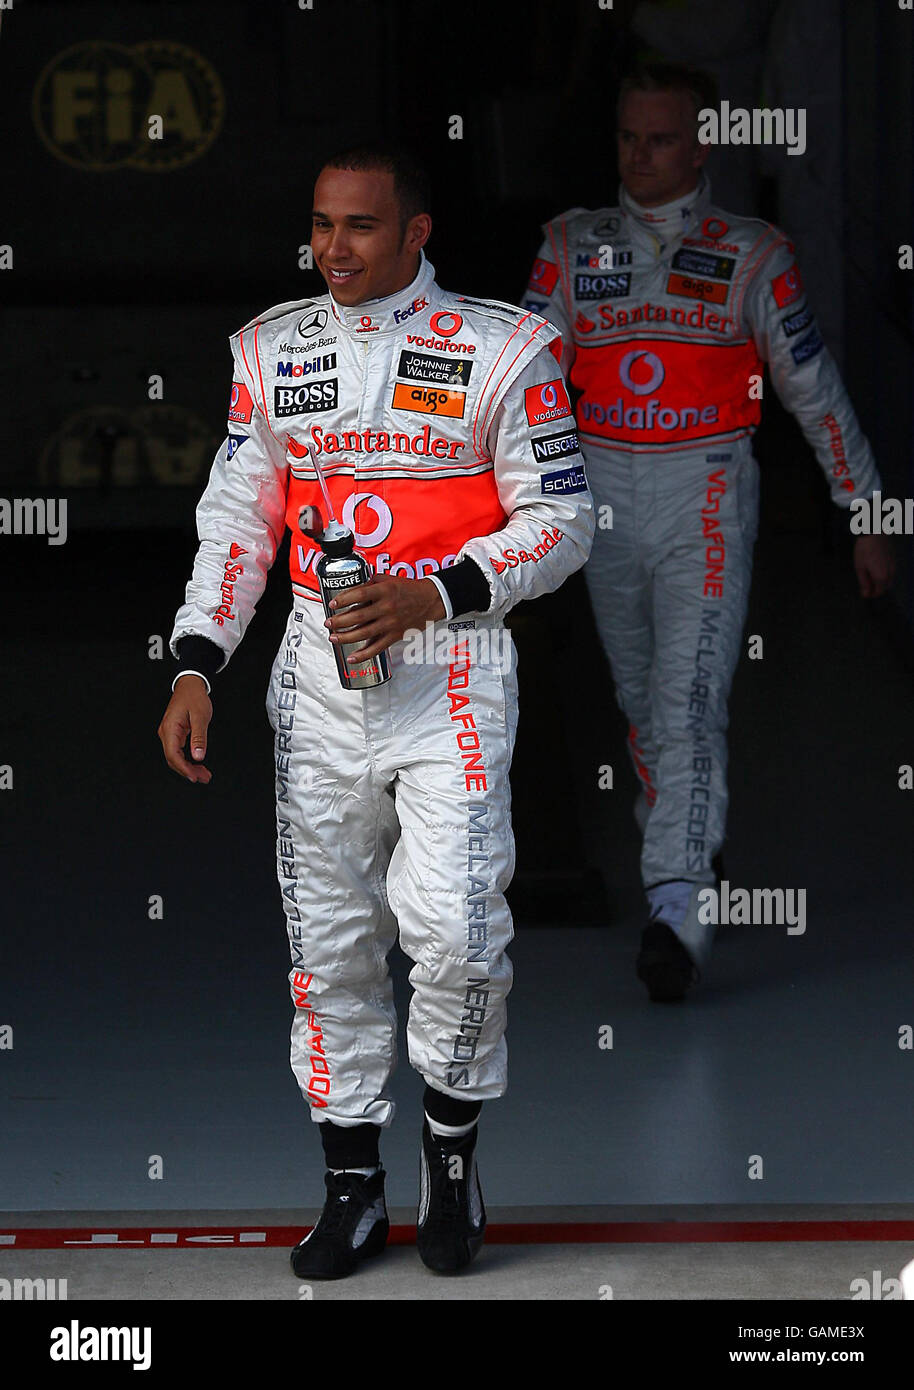 Der Großbritanniens Lewis Hamilton und Teamkollege Heikki Kovalainen im Qualifying im Albert Park, Melbourne, Australien. Stockfoto